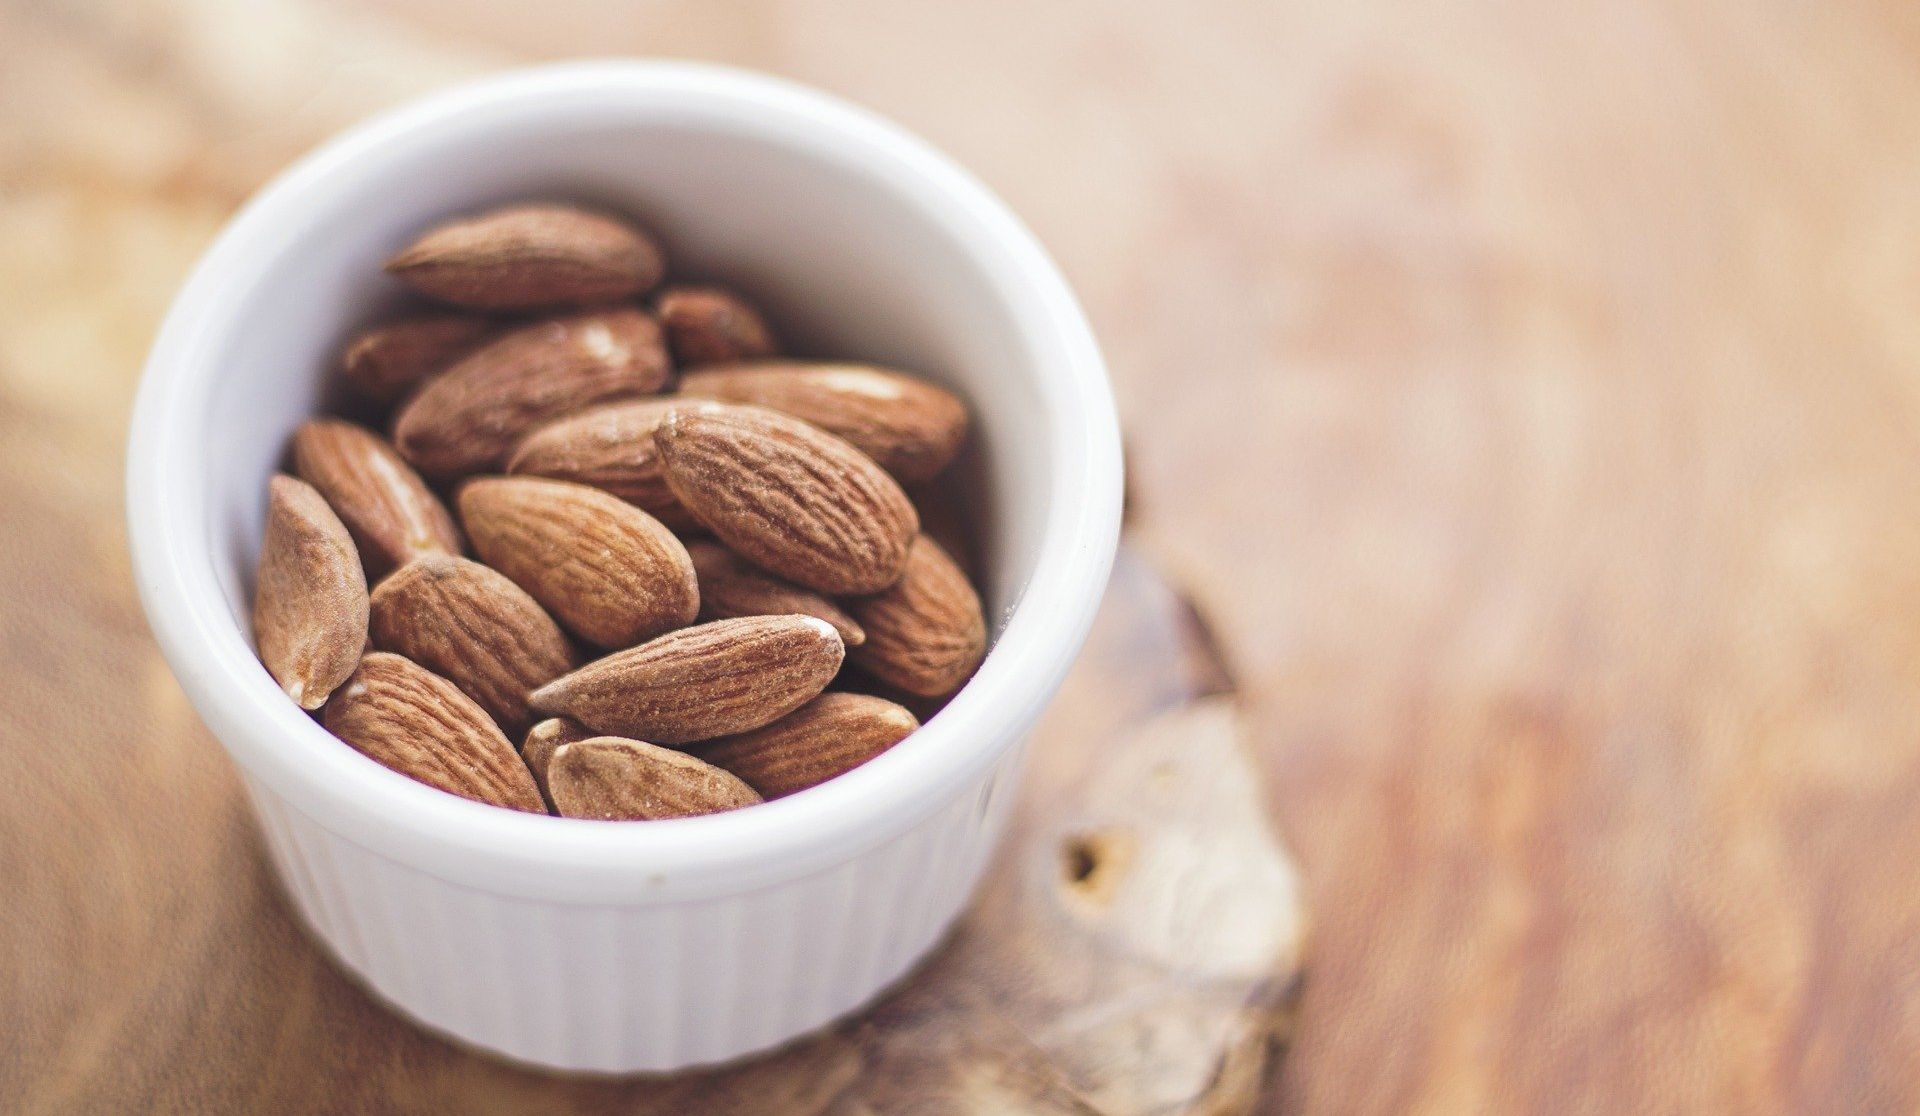 Kacang Almond merupakan cemilan sehat yang cocok untuk diet demi bentuk tubuh ideal